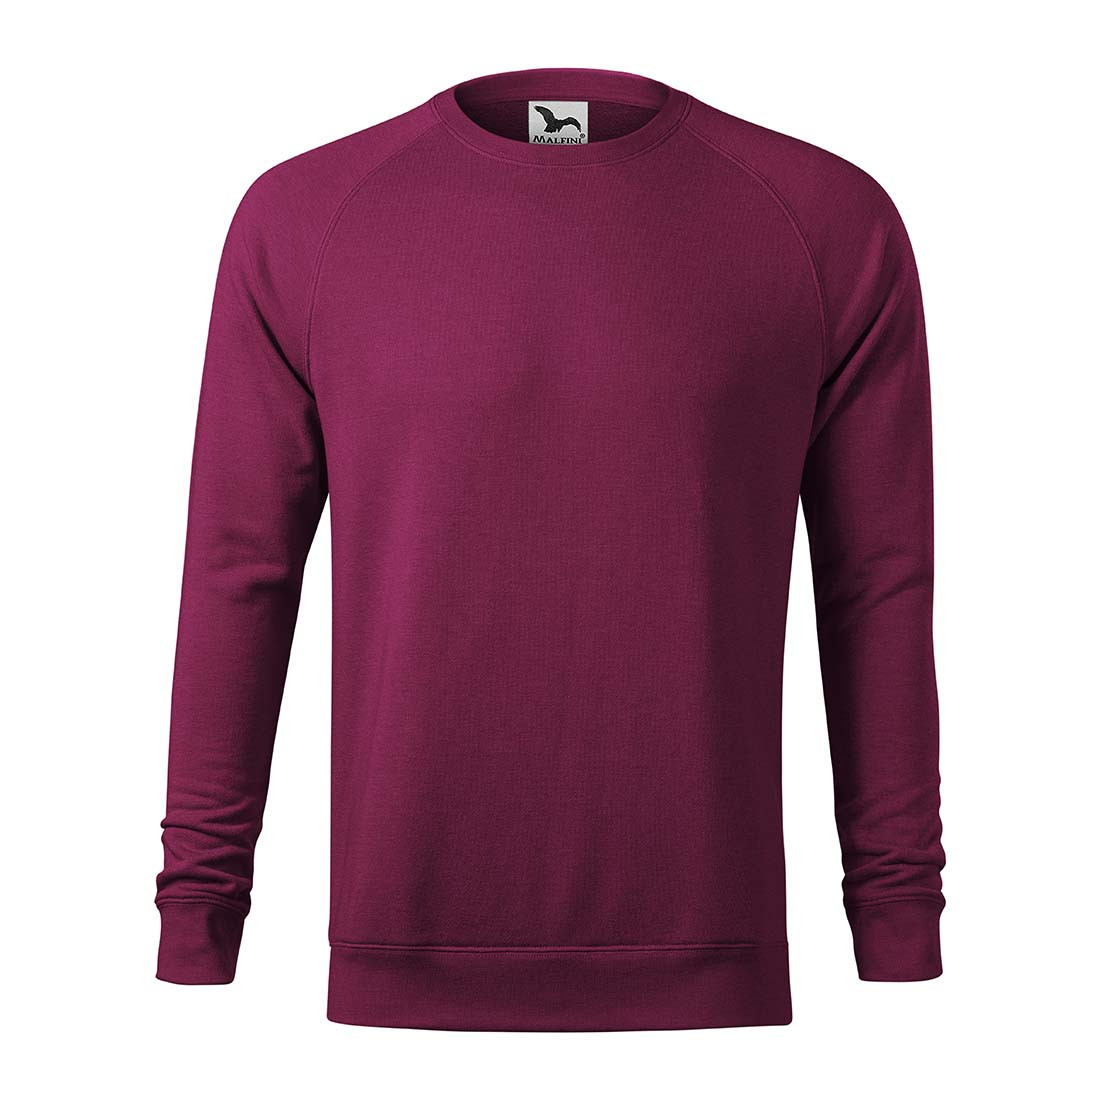 MERGER Men's Sweatshirt - Safetywear